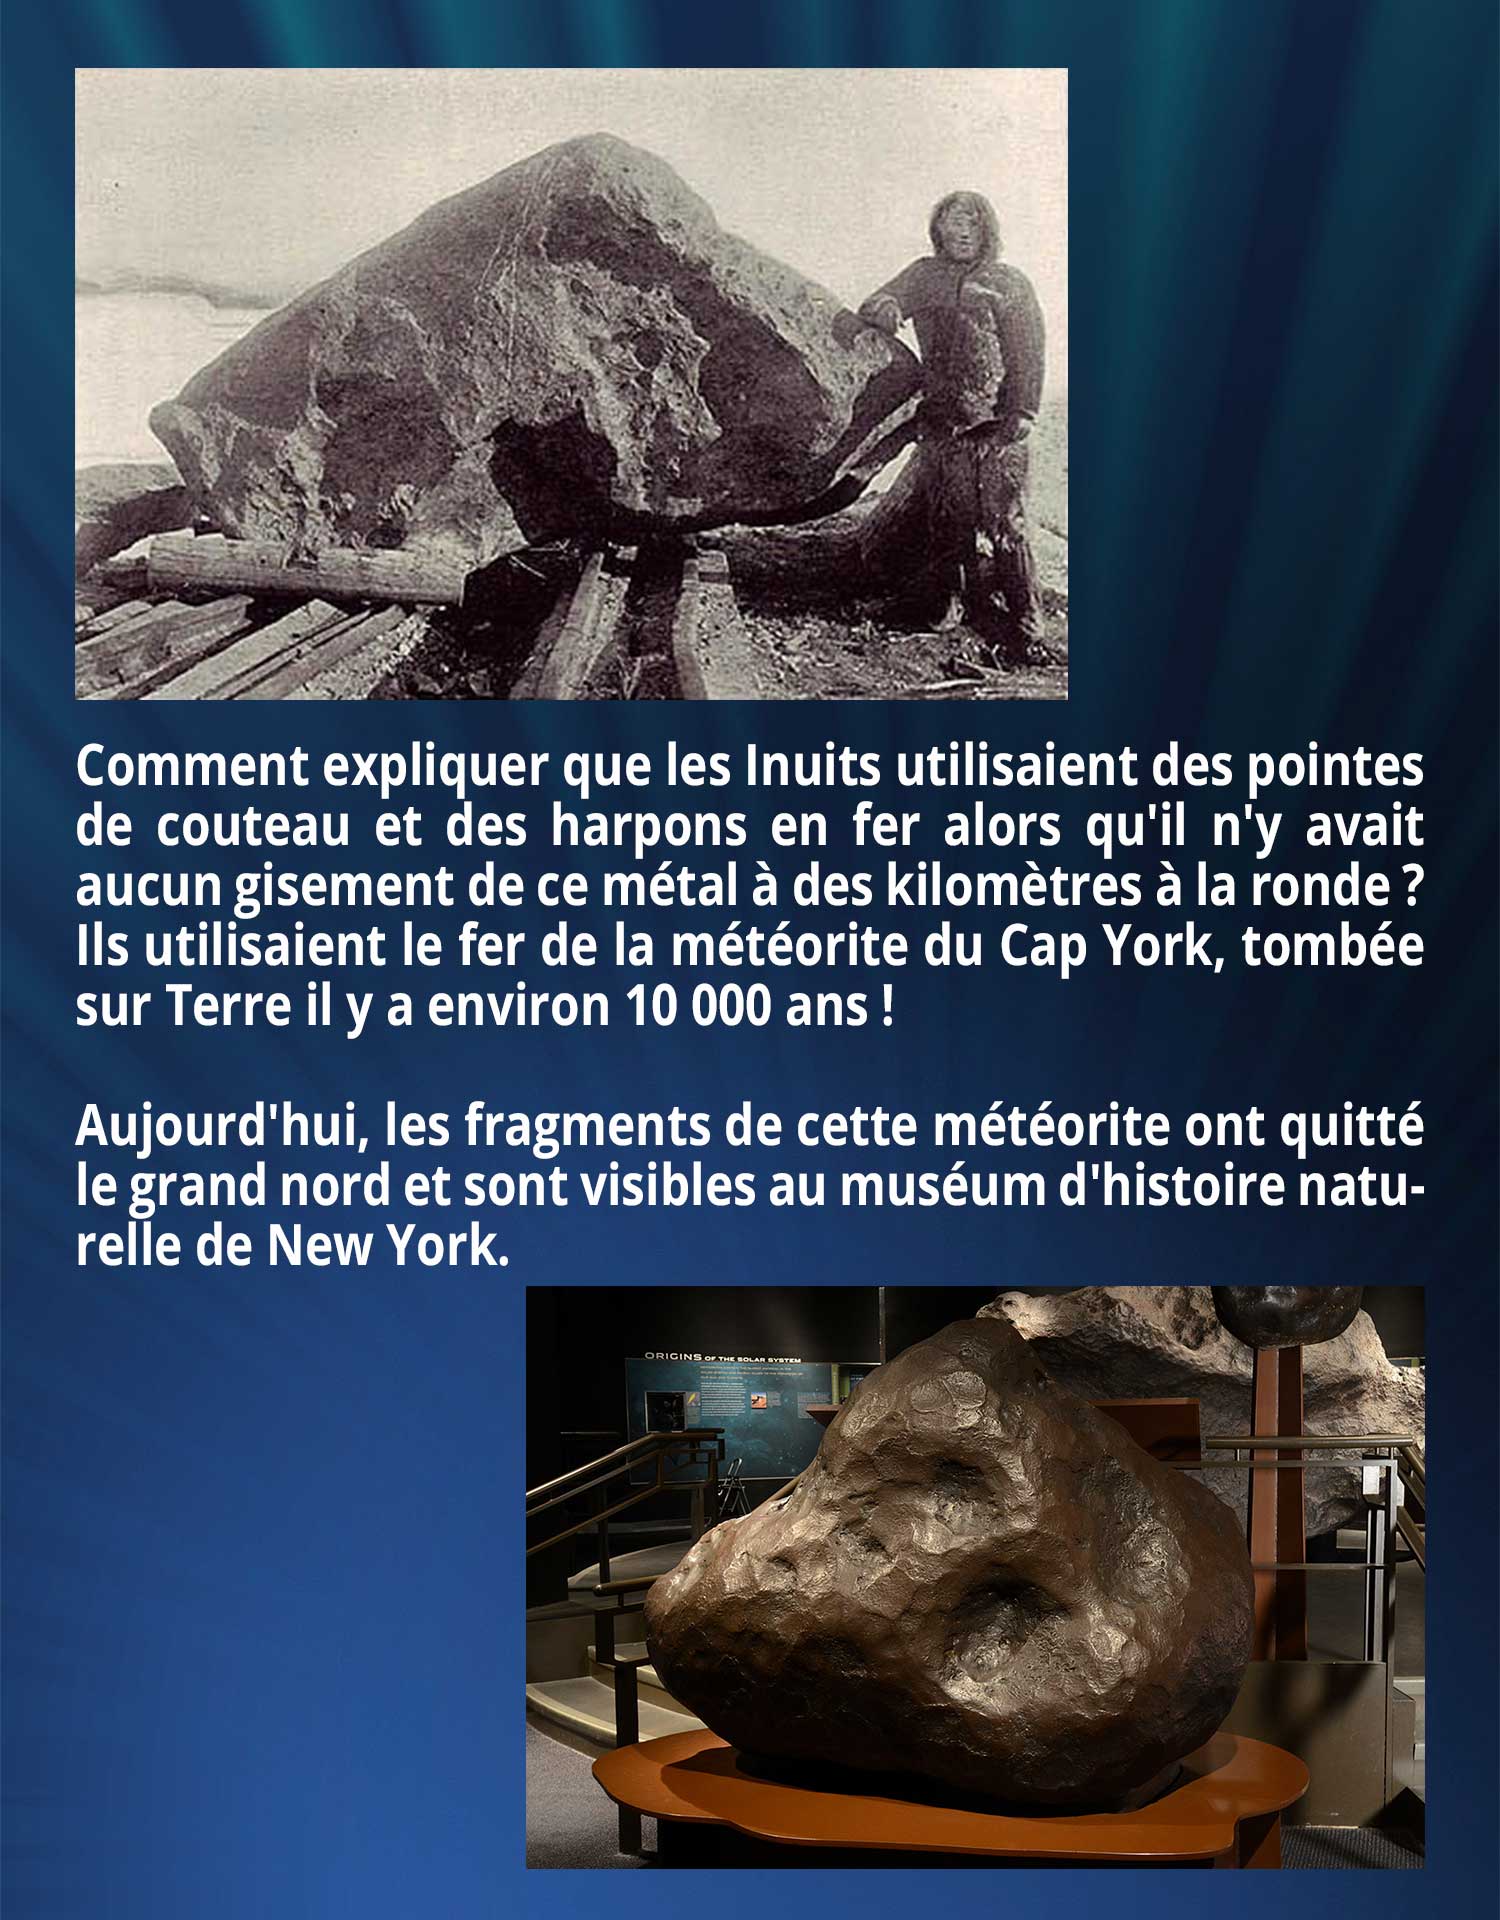 Comment expliquer que les Inuits utilisaient des pointes de couteau et des harpons en fer alors qu'il n'y avait aucun gisement de ce métal à des kilomètres à la ronde ? Ils utilisaient le fer de la météorite du Cap York, tombée sur Terre il y a environ 10 000 ans ! Aujourd'hui, les fragments de cette météorite ont quitté le grand nord et sont visibles au muséum d'histoire naturelle de New York.